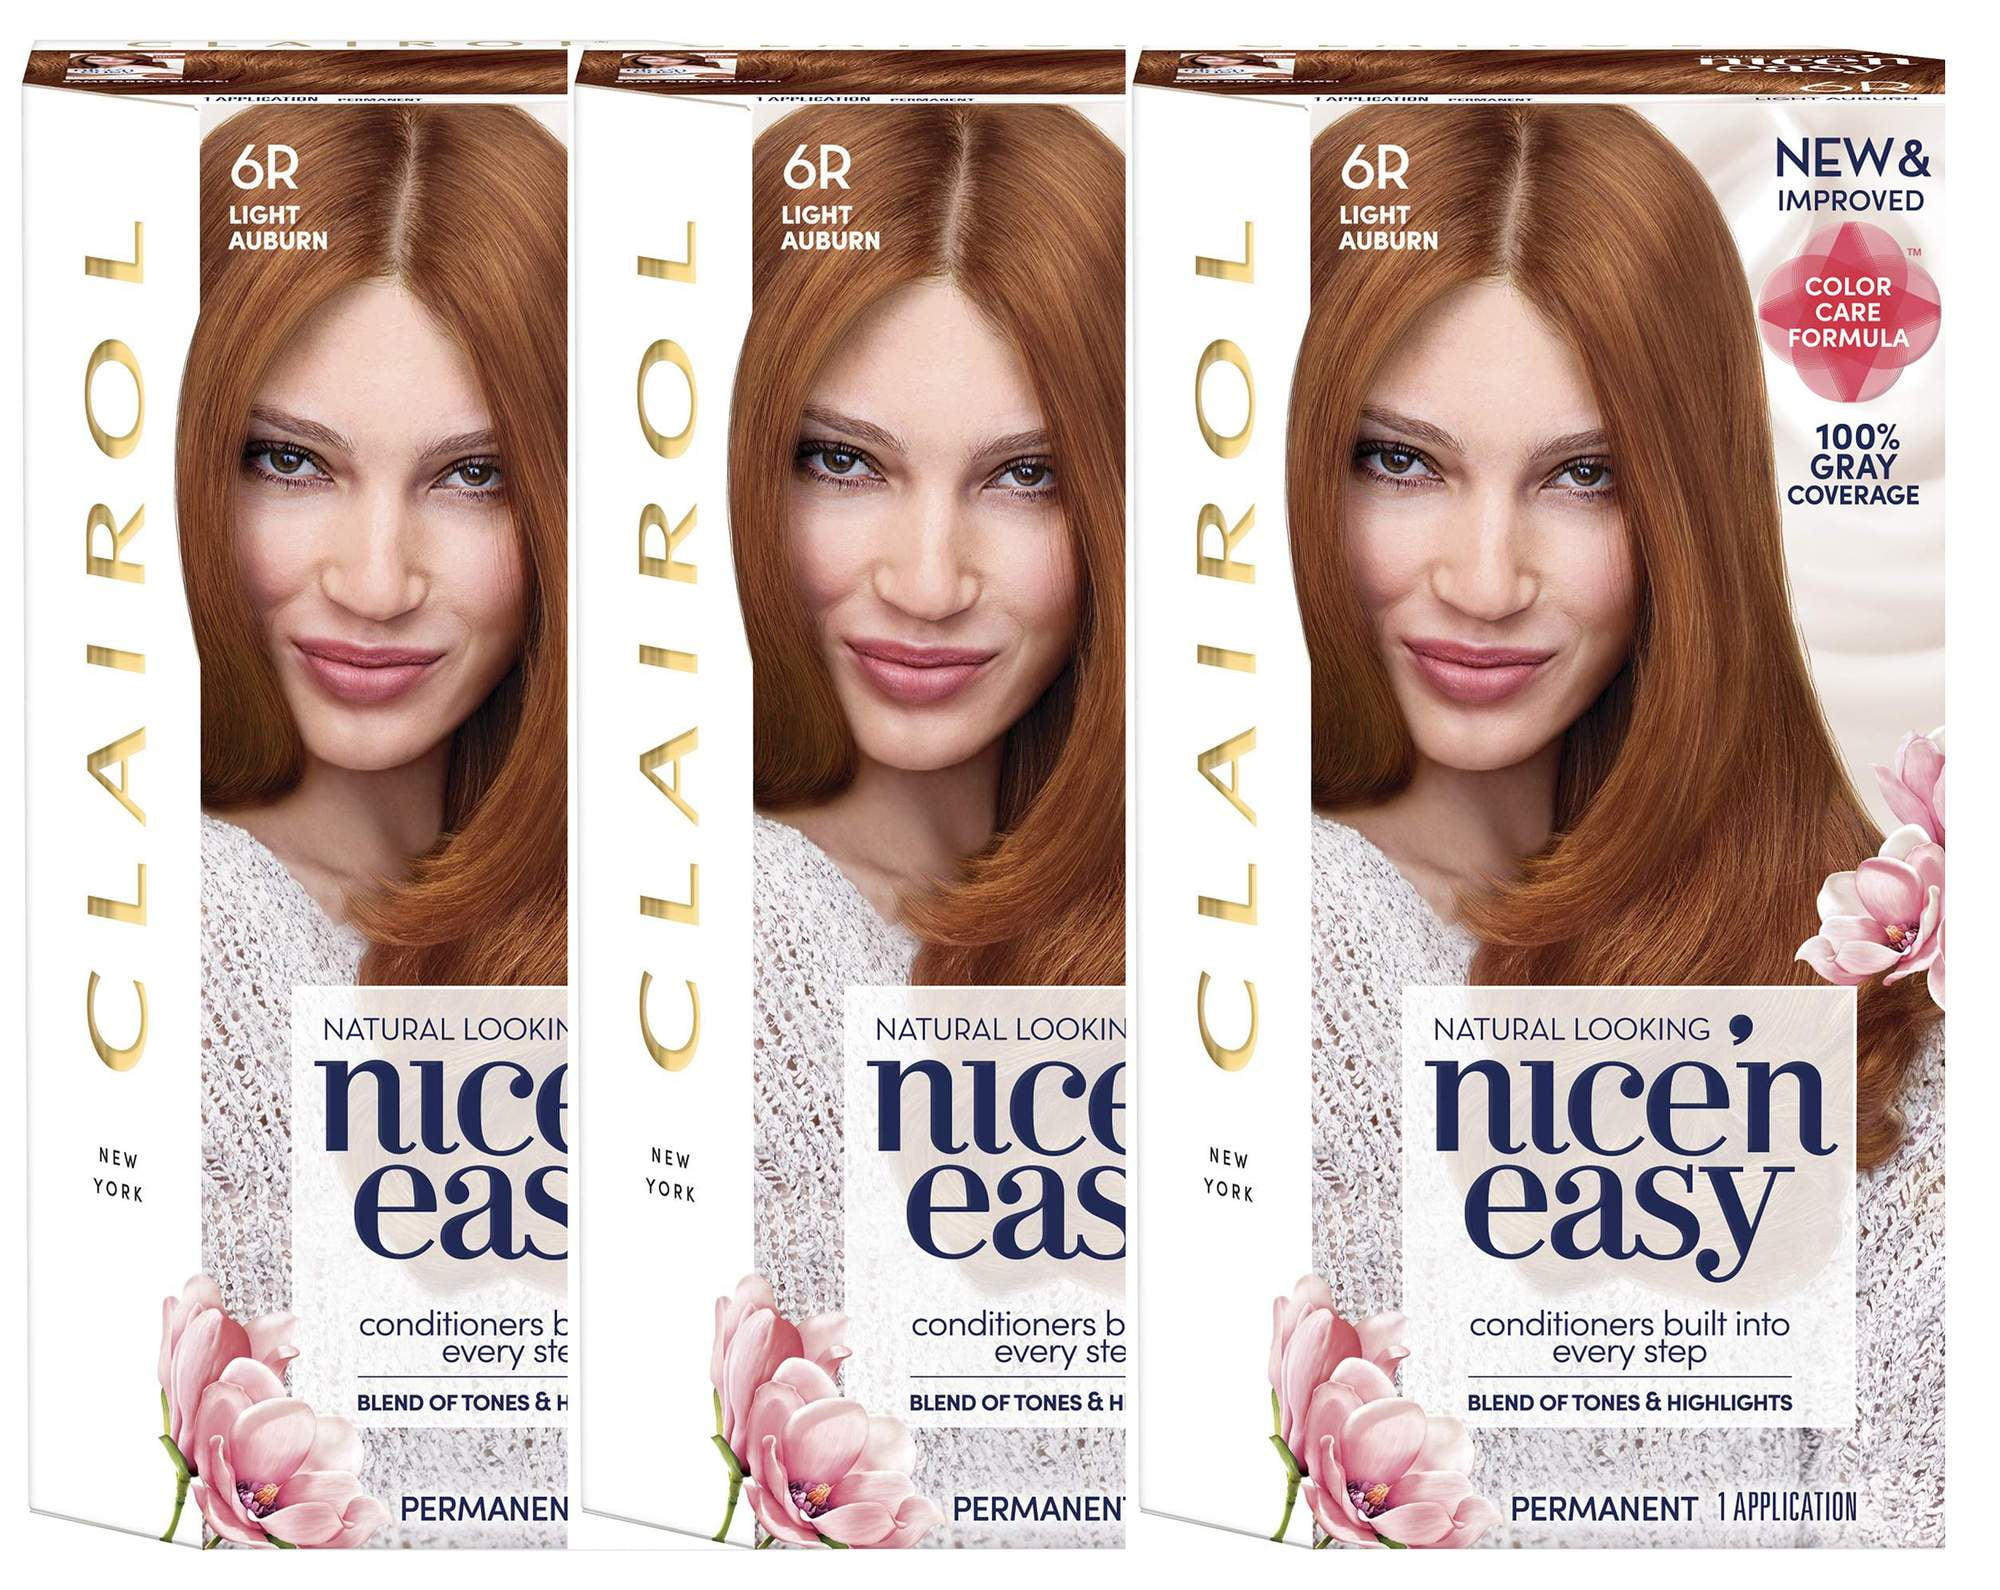 3. Clairol Nice'n Easy Permanent Hair Color, 7 Dark Blonde - wide 5